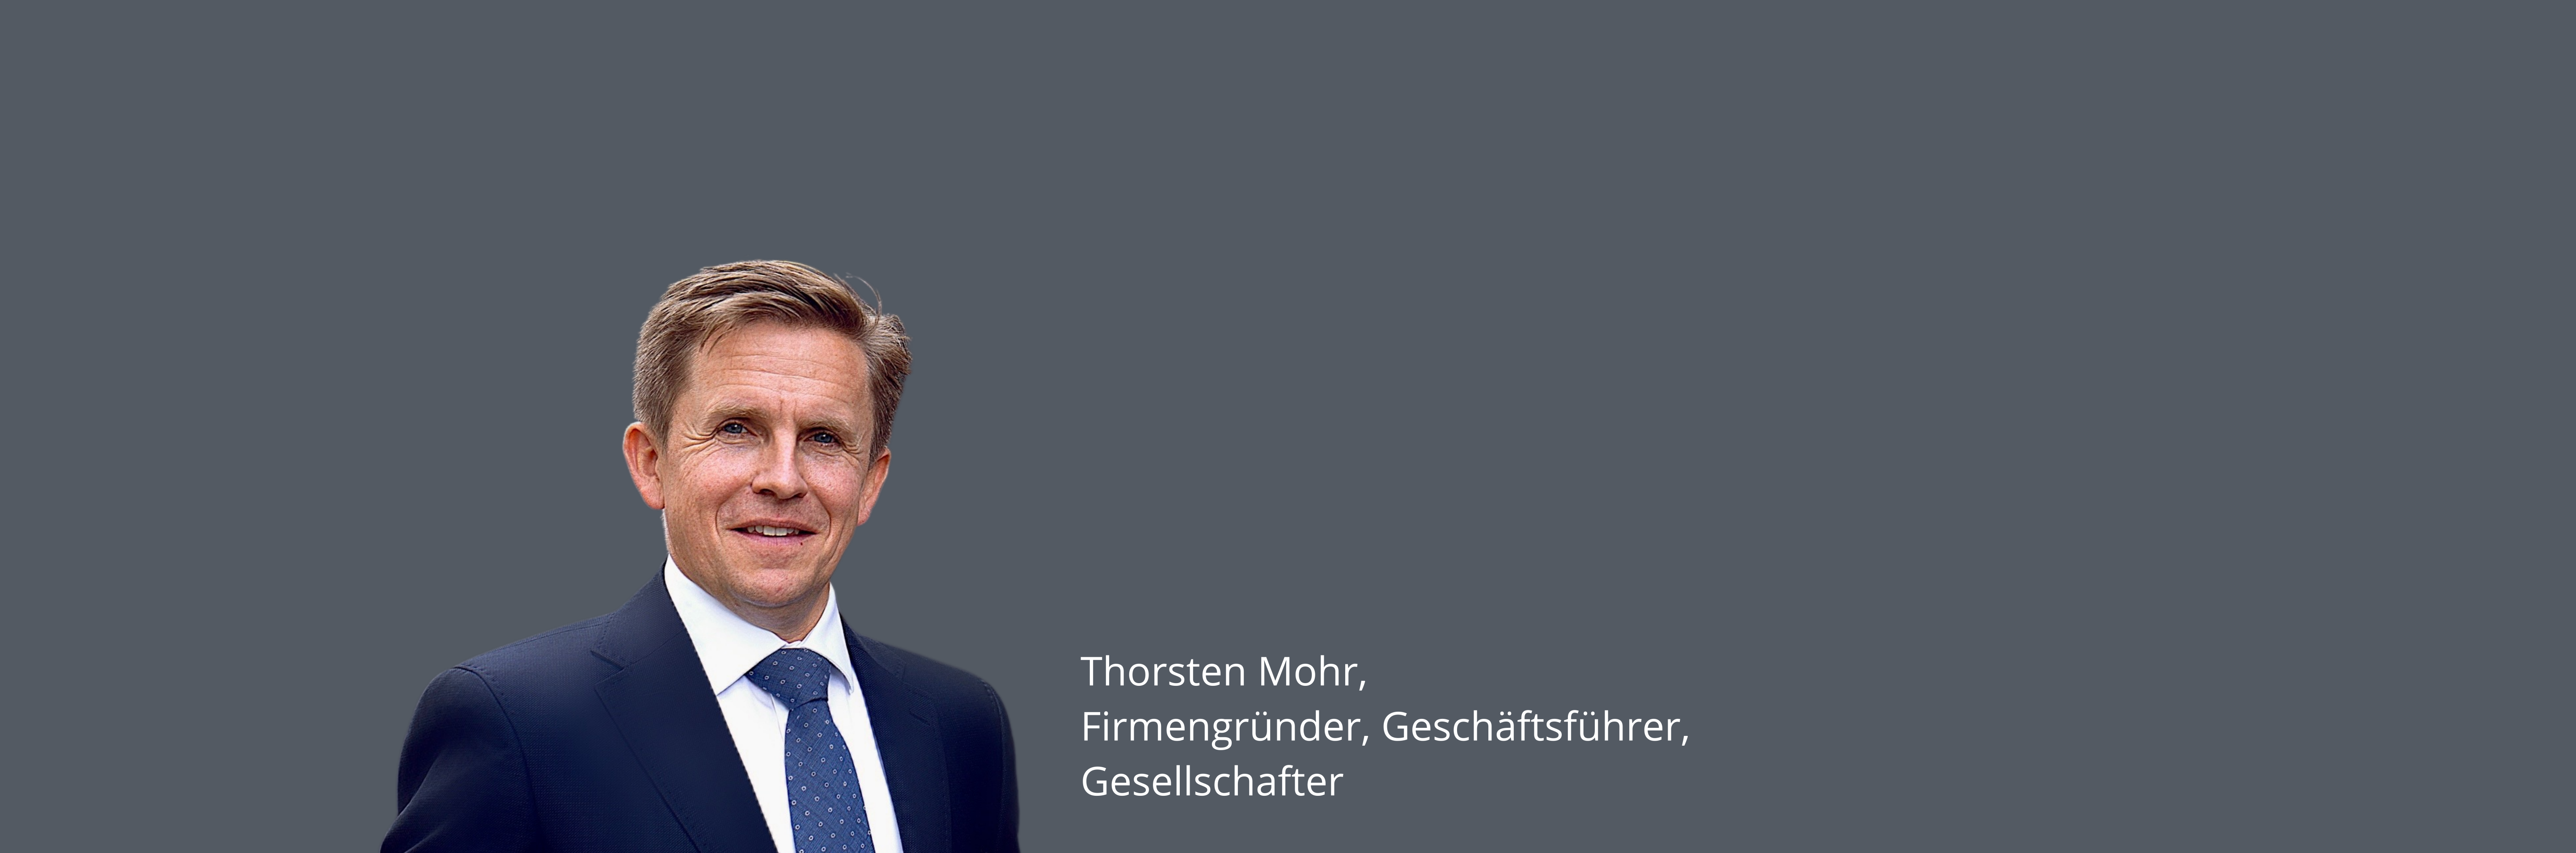 Thorsten Mohr